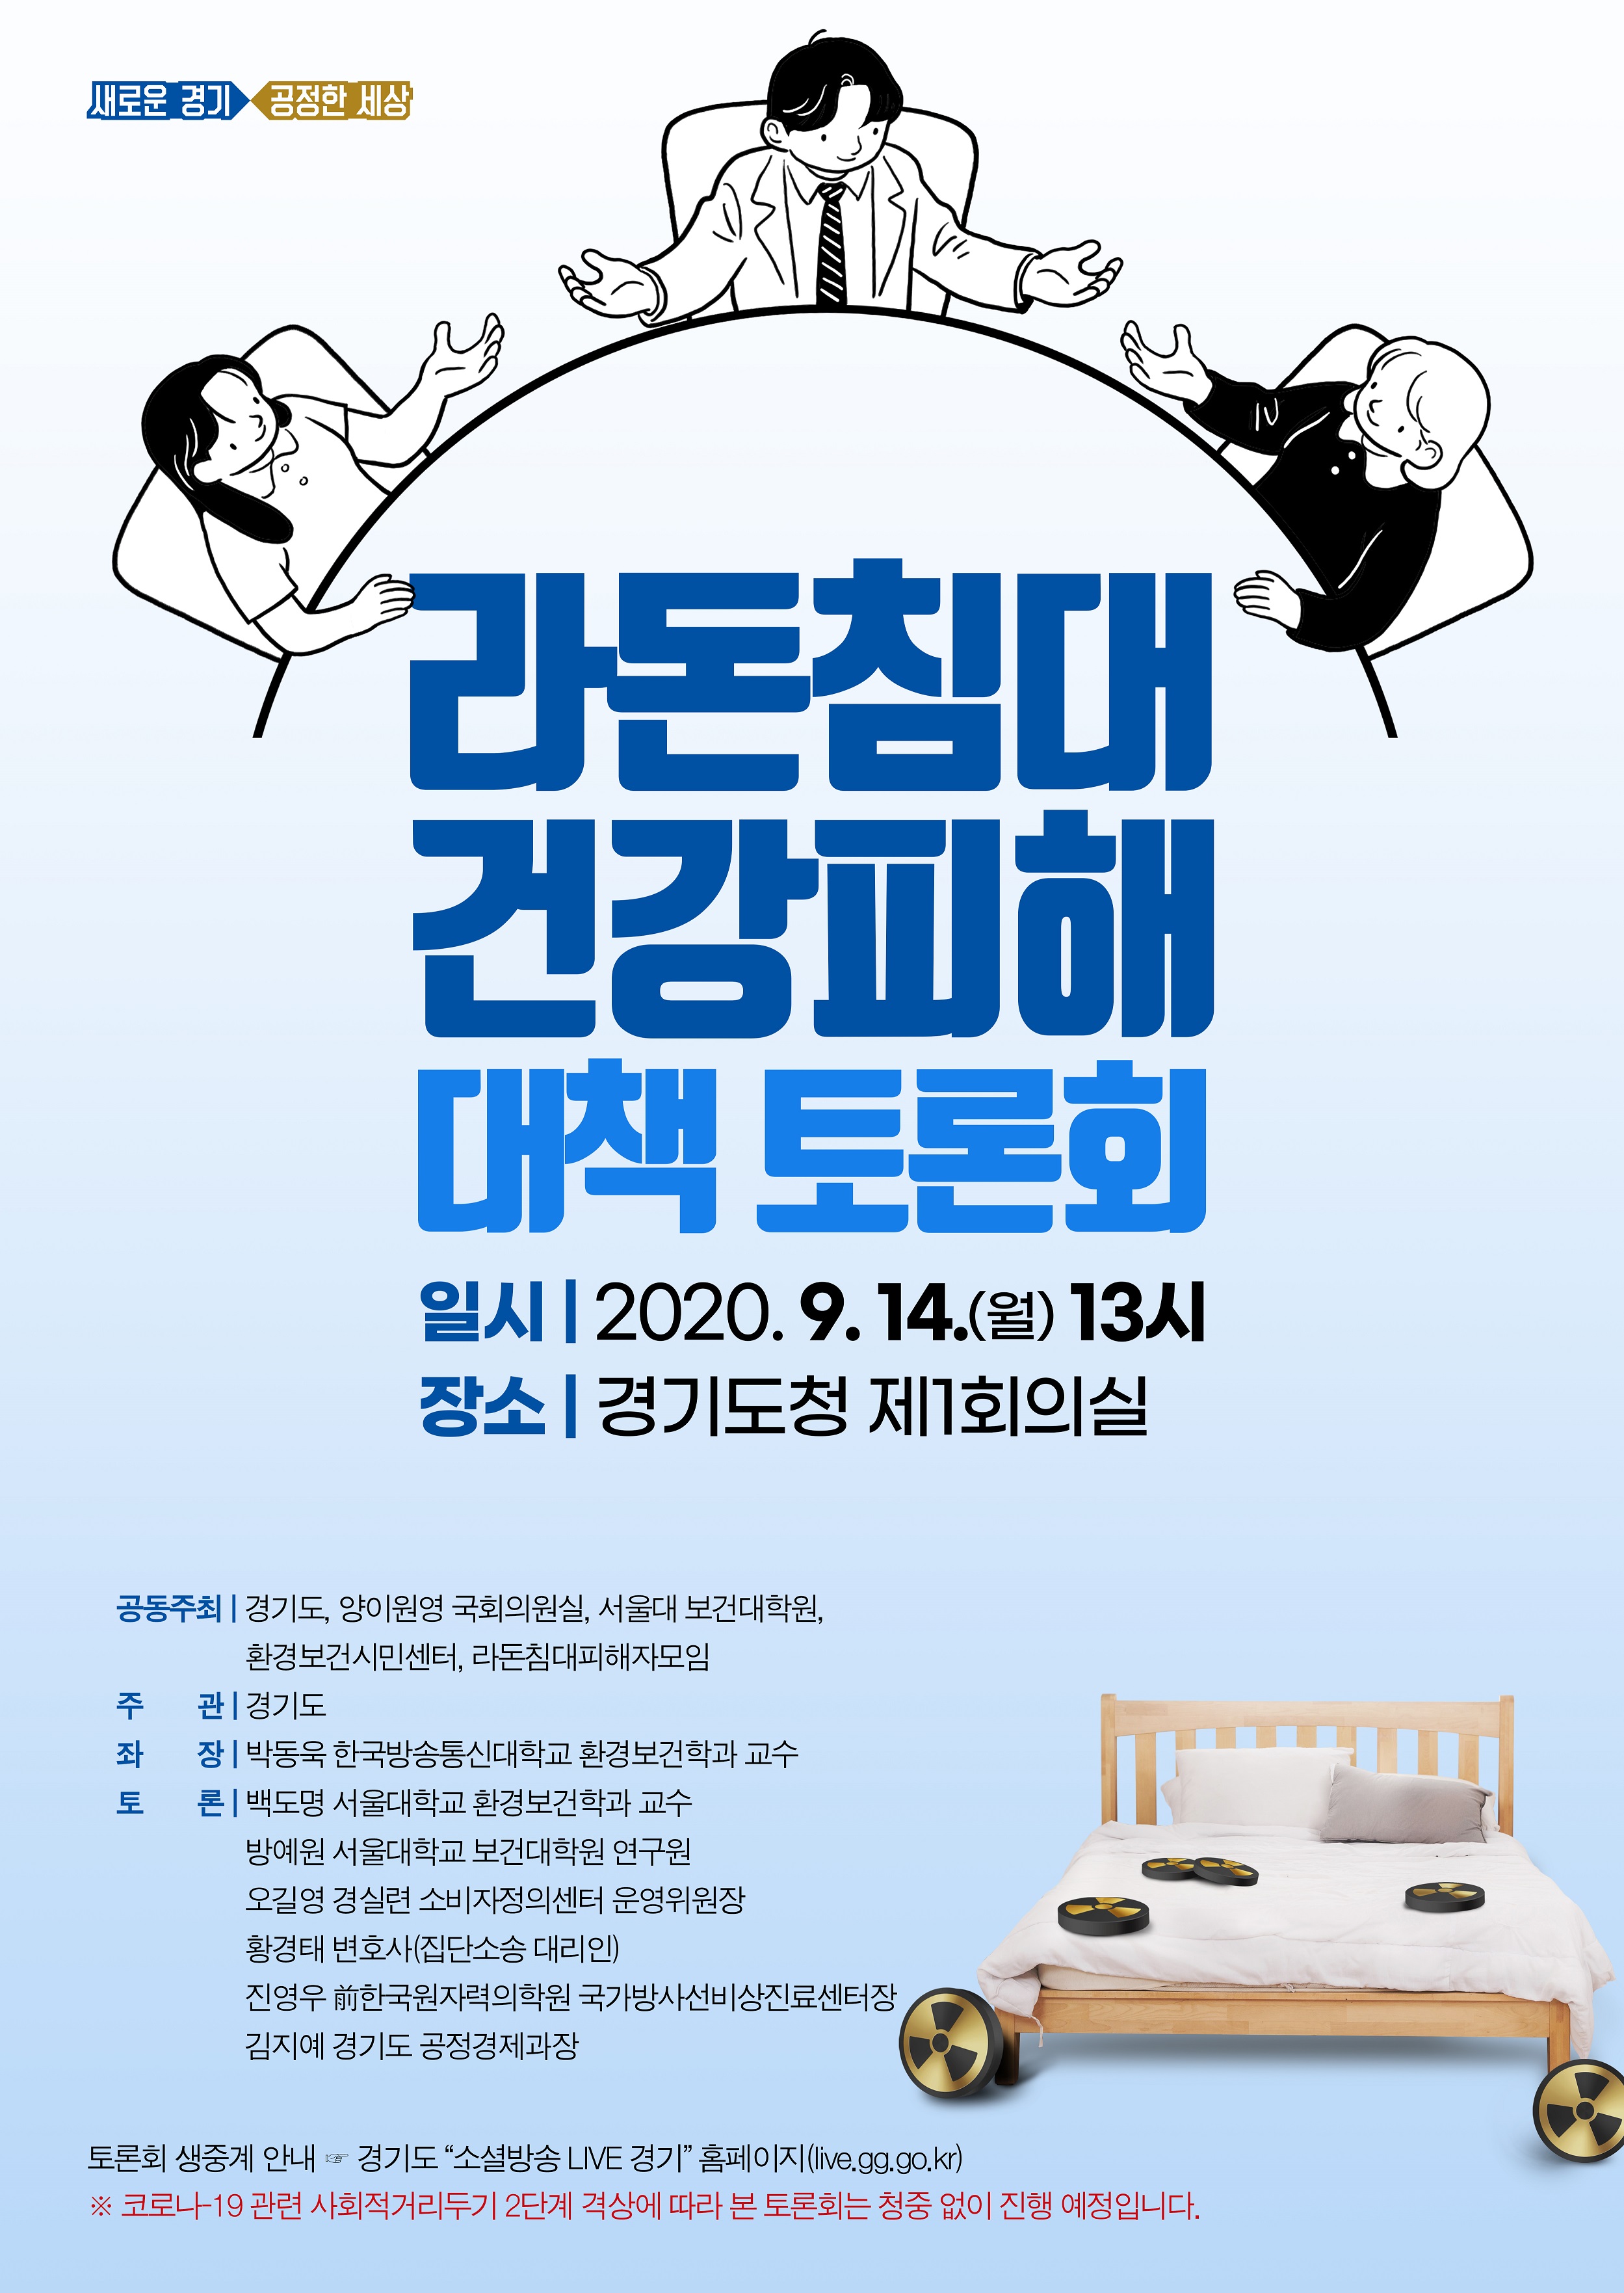 도, 라돈 발생 침대 사용자 건강피해 대책을 위한 토론회 개최